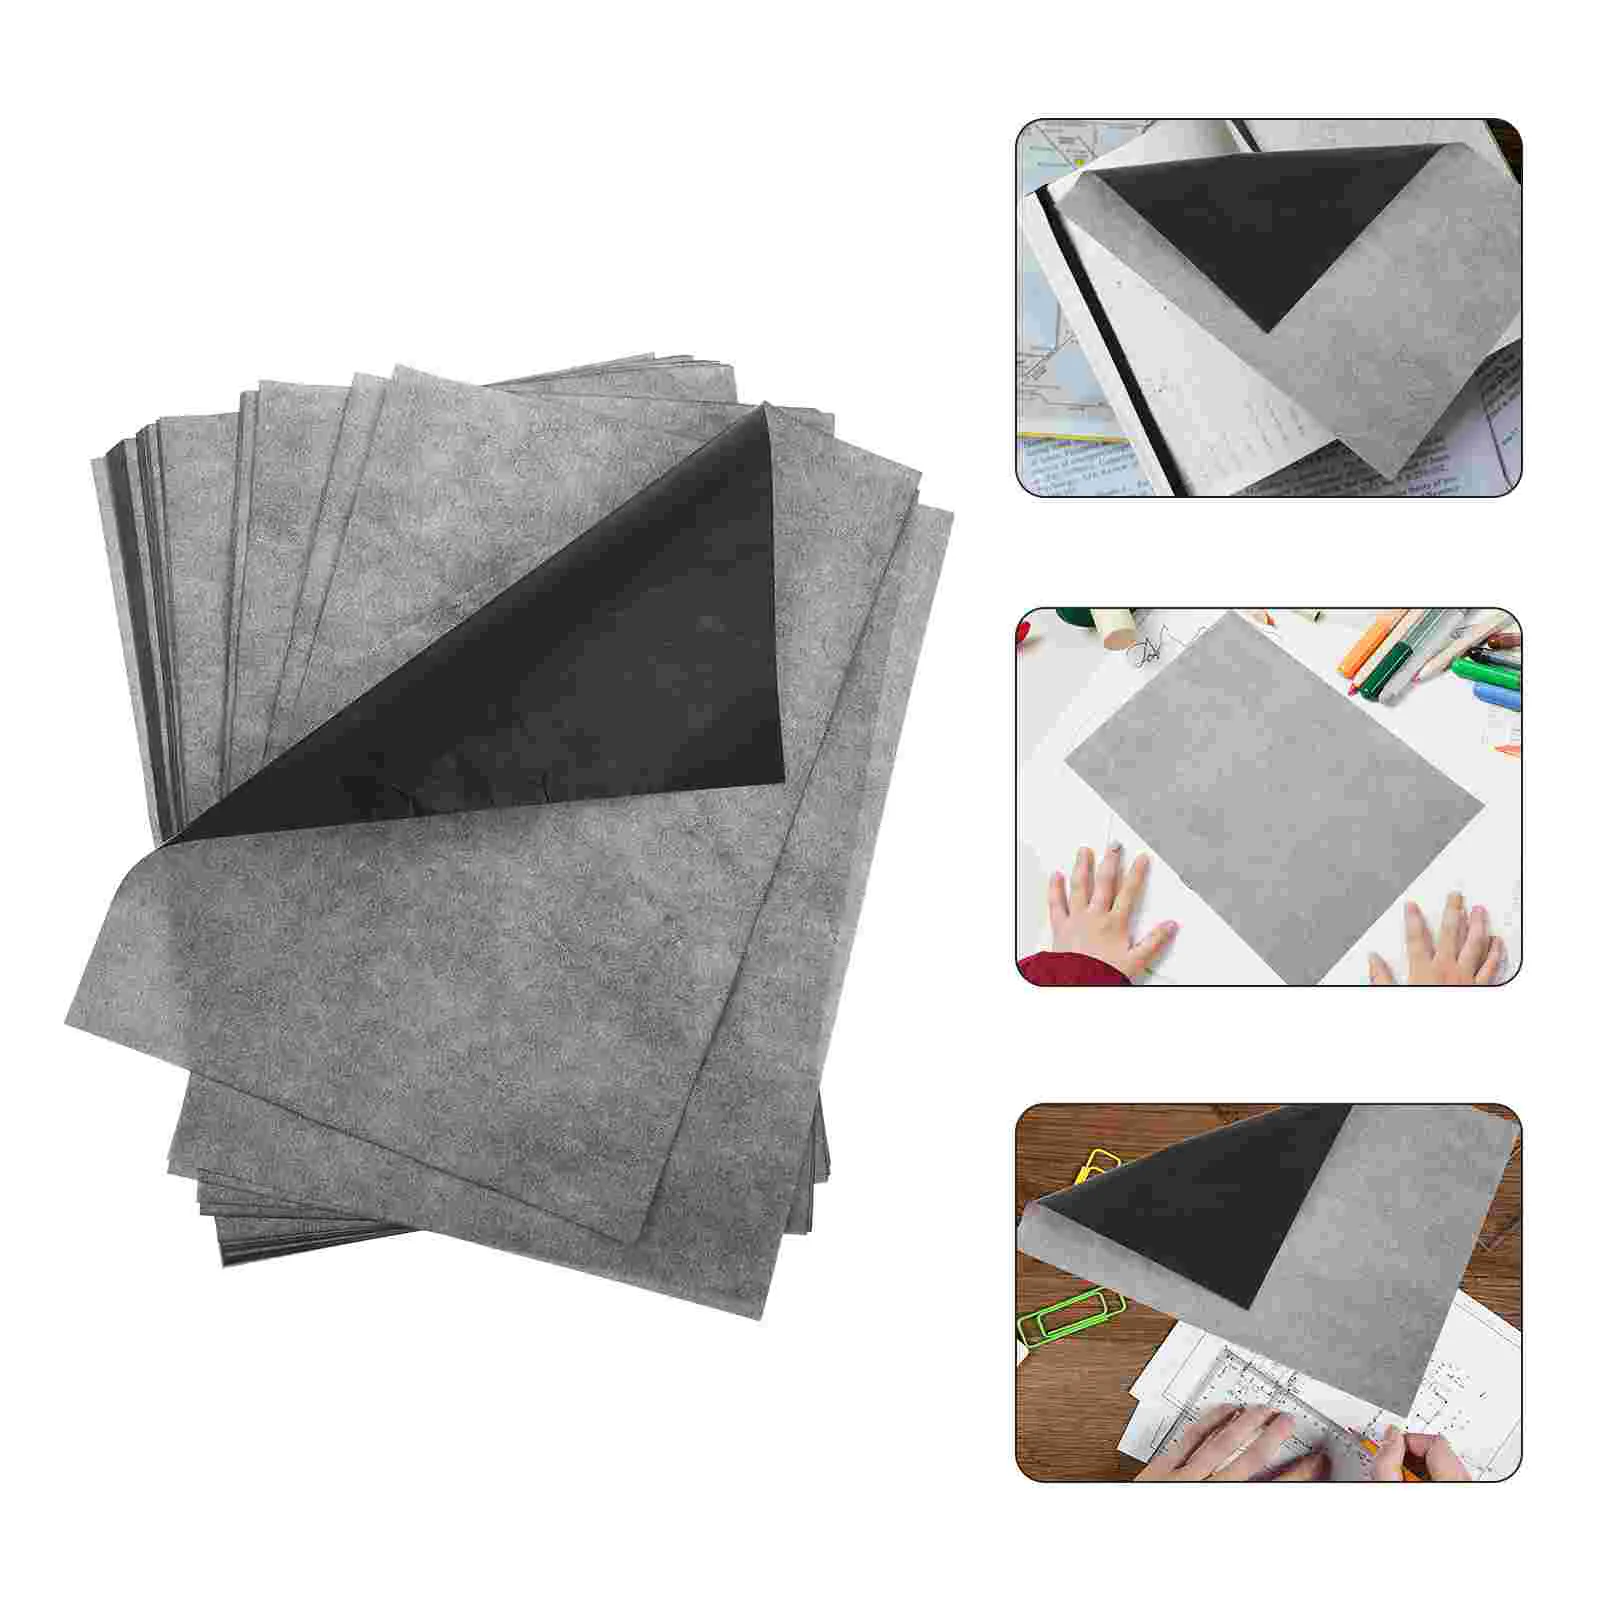 

100 листов карбоновой копировальной бумаги, односторонняя копировальная бумага A4, карбоновая бумага